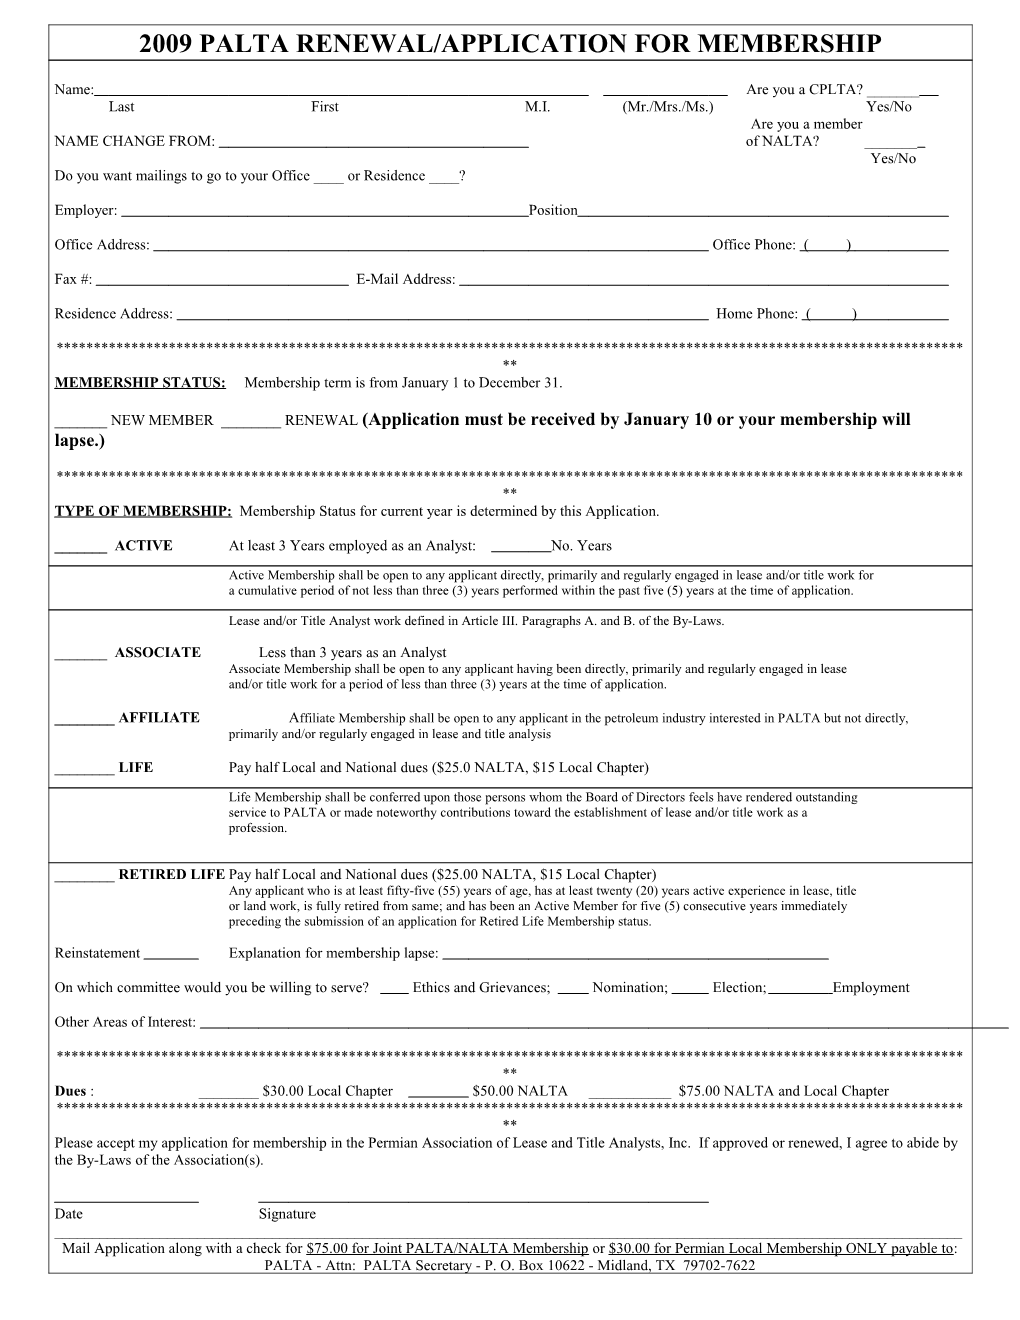 2002 Palta Renewal/Application for Membership